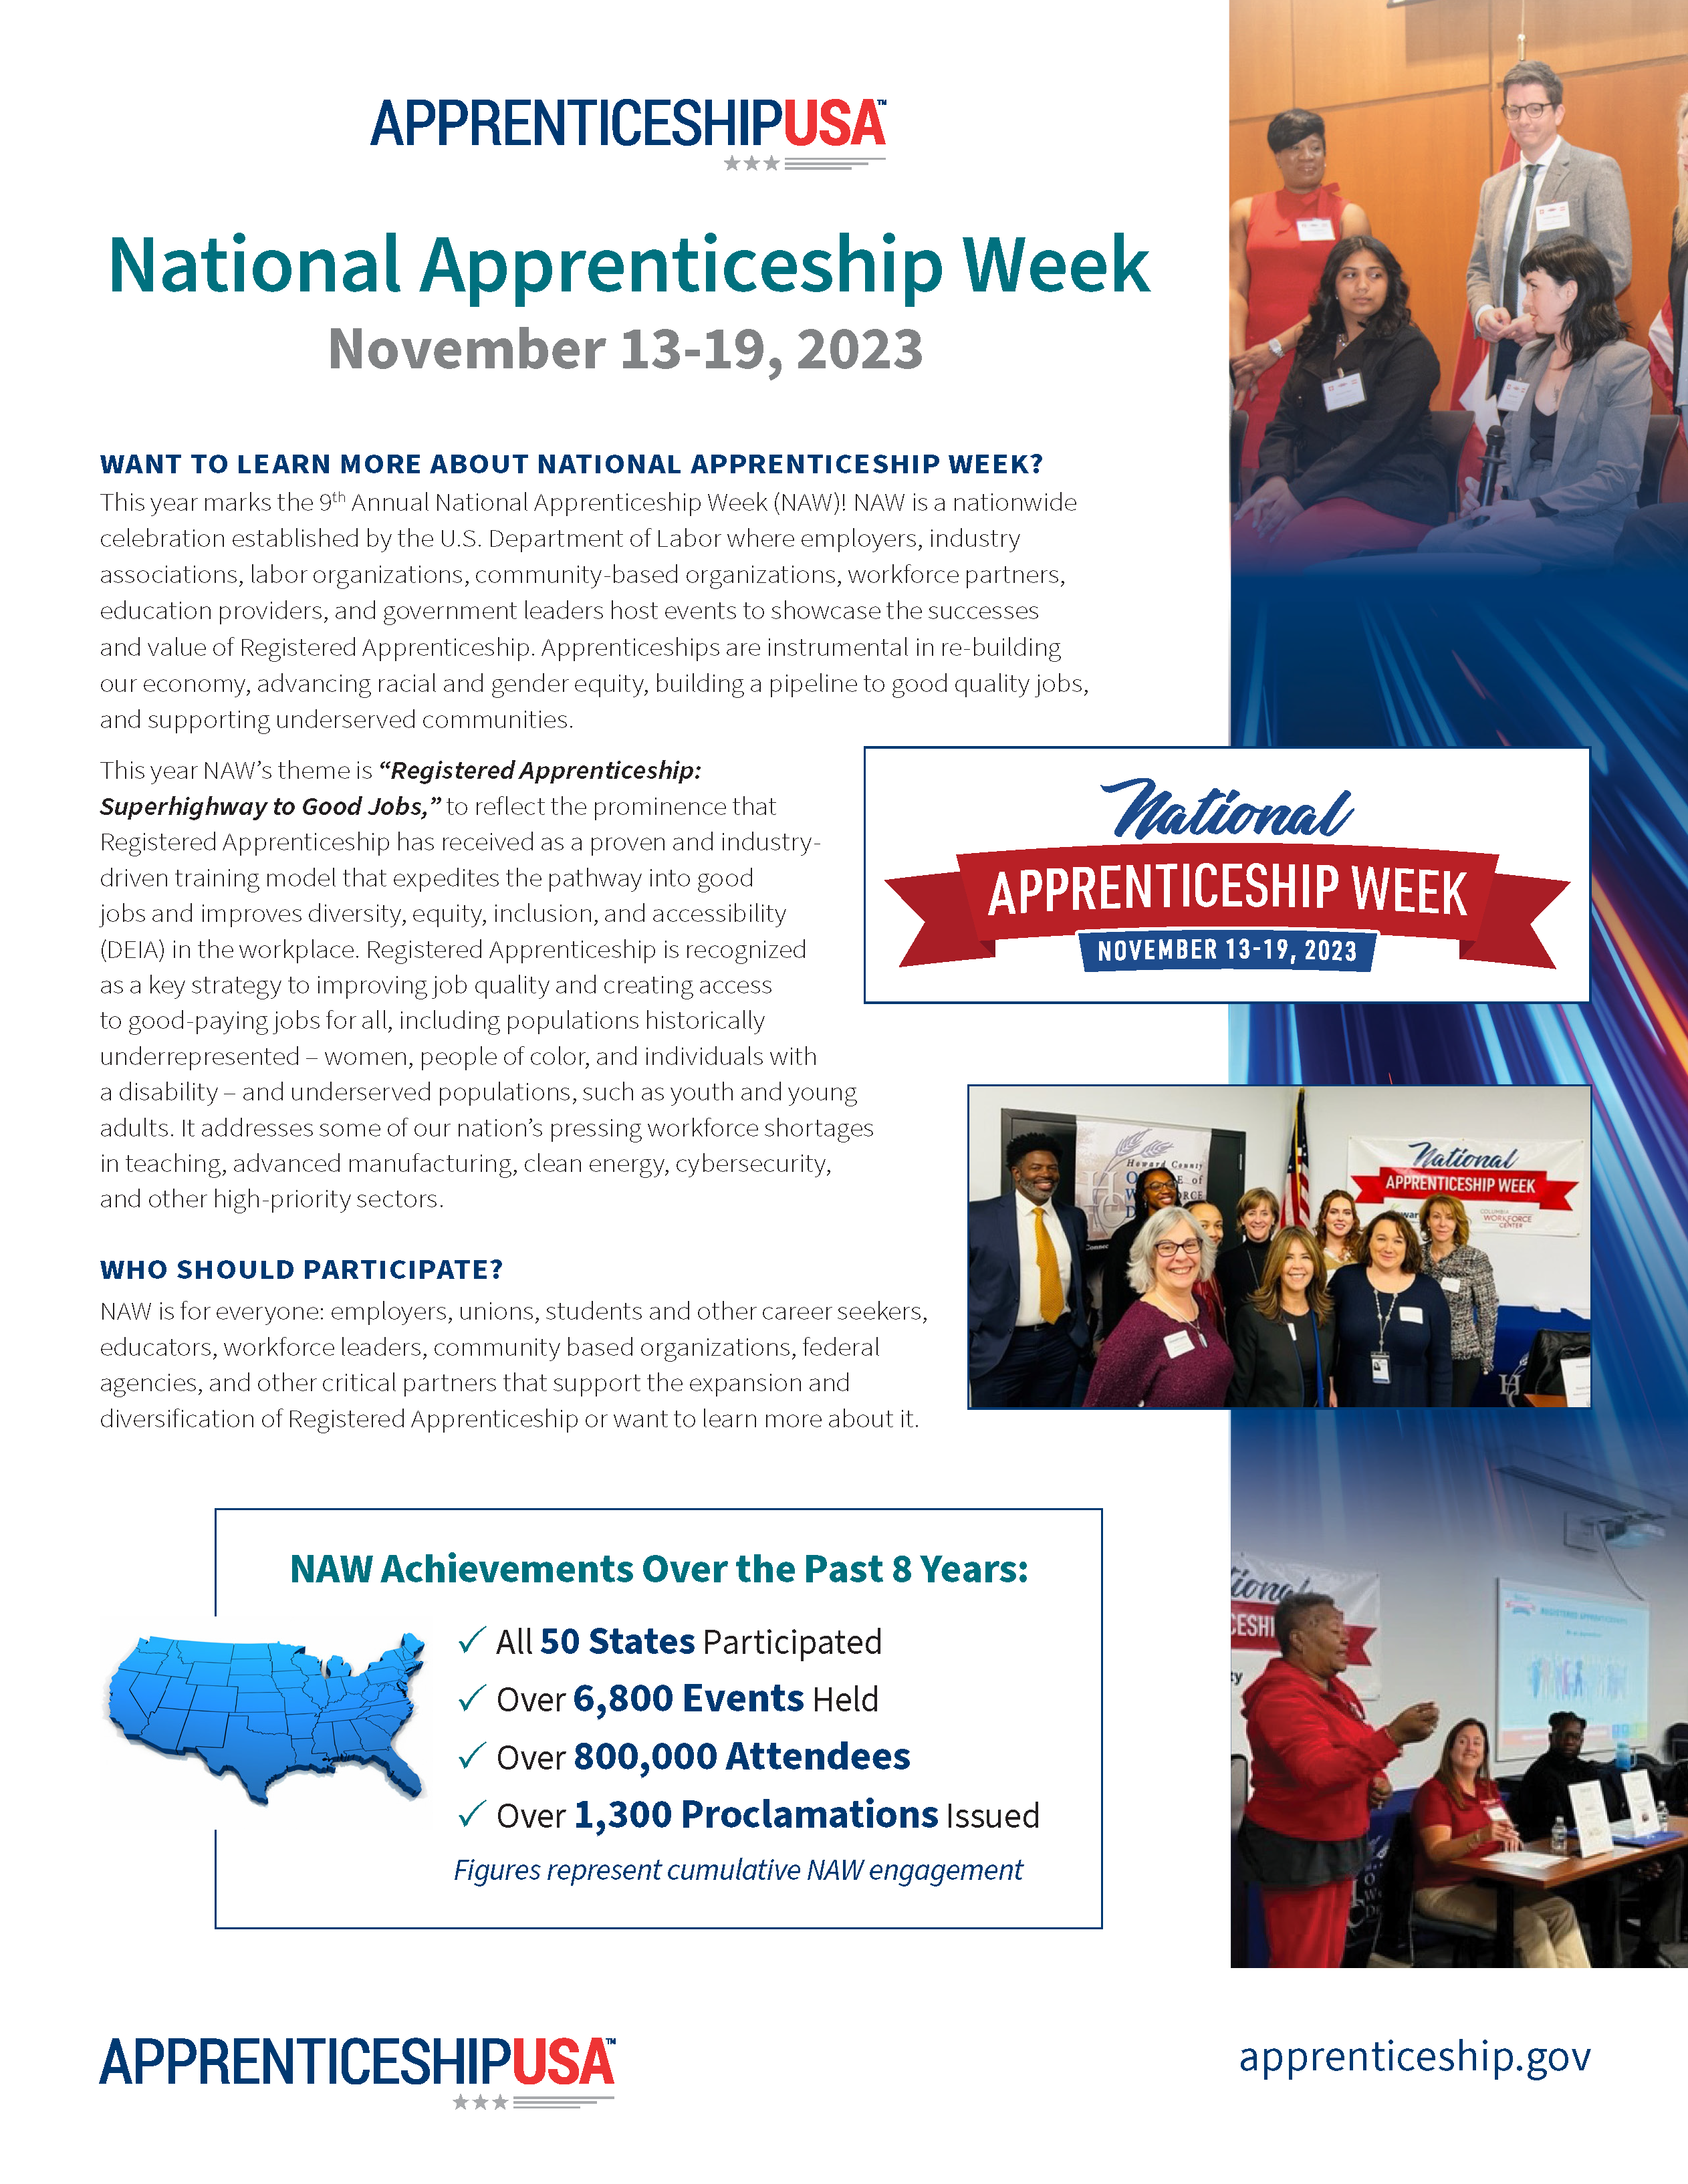 Apprenticeship USA National Apprenticeship Week flyer